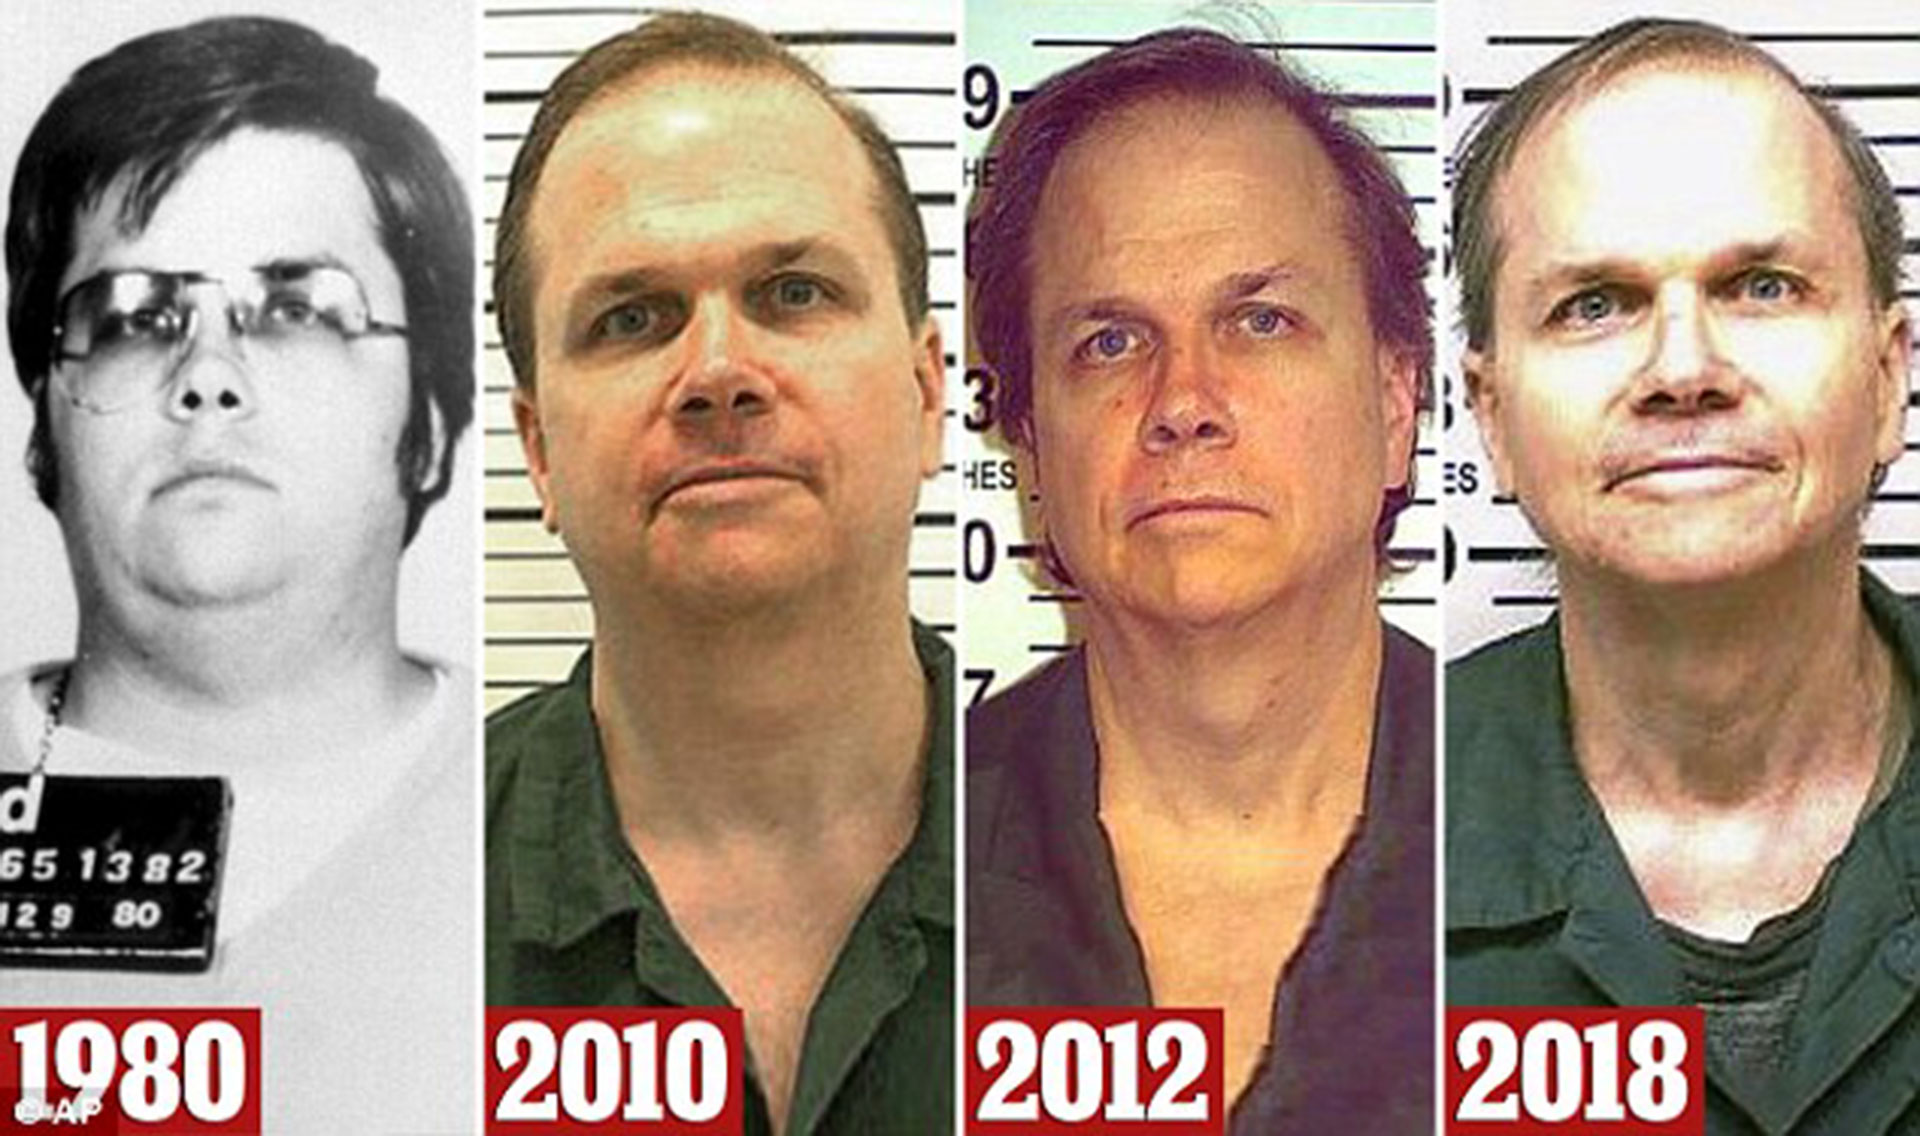 Los identikits de Chapman a través de los años. Cada vez que pidió la libertad condicional le fue denegada (AP)